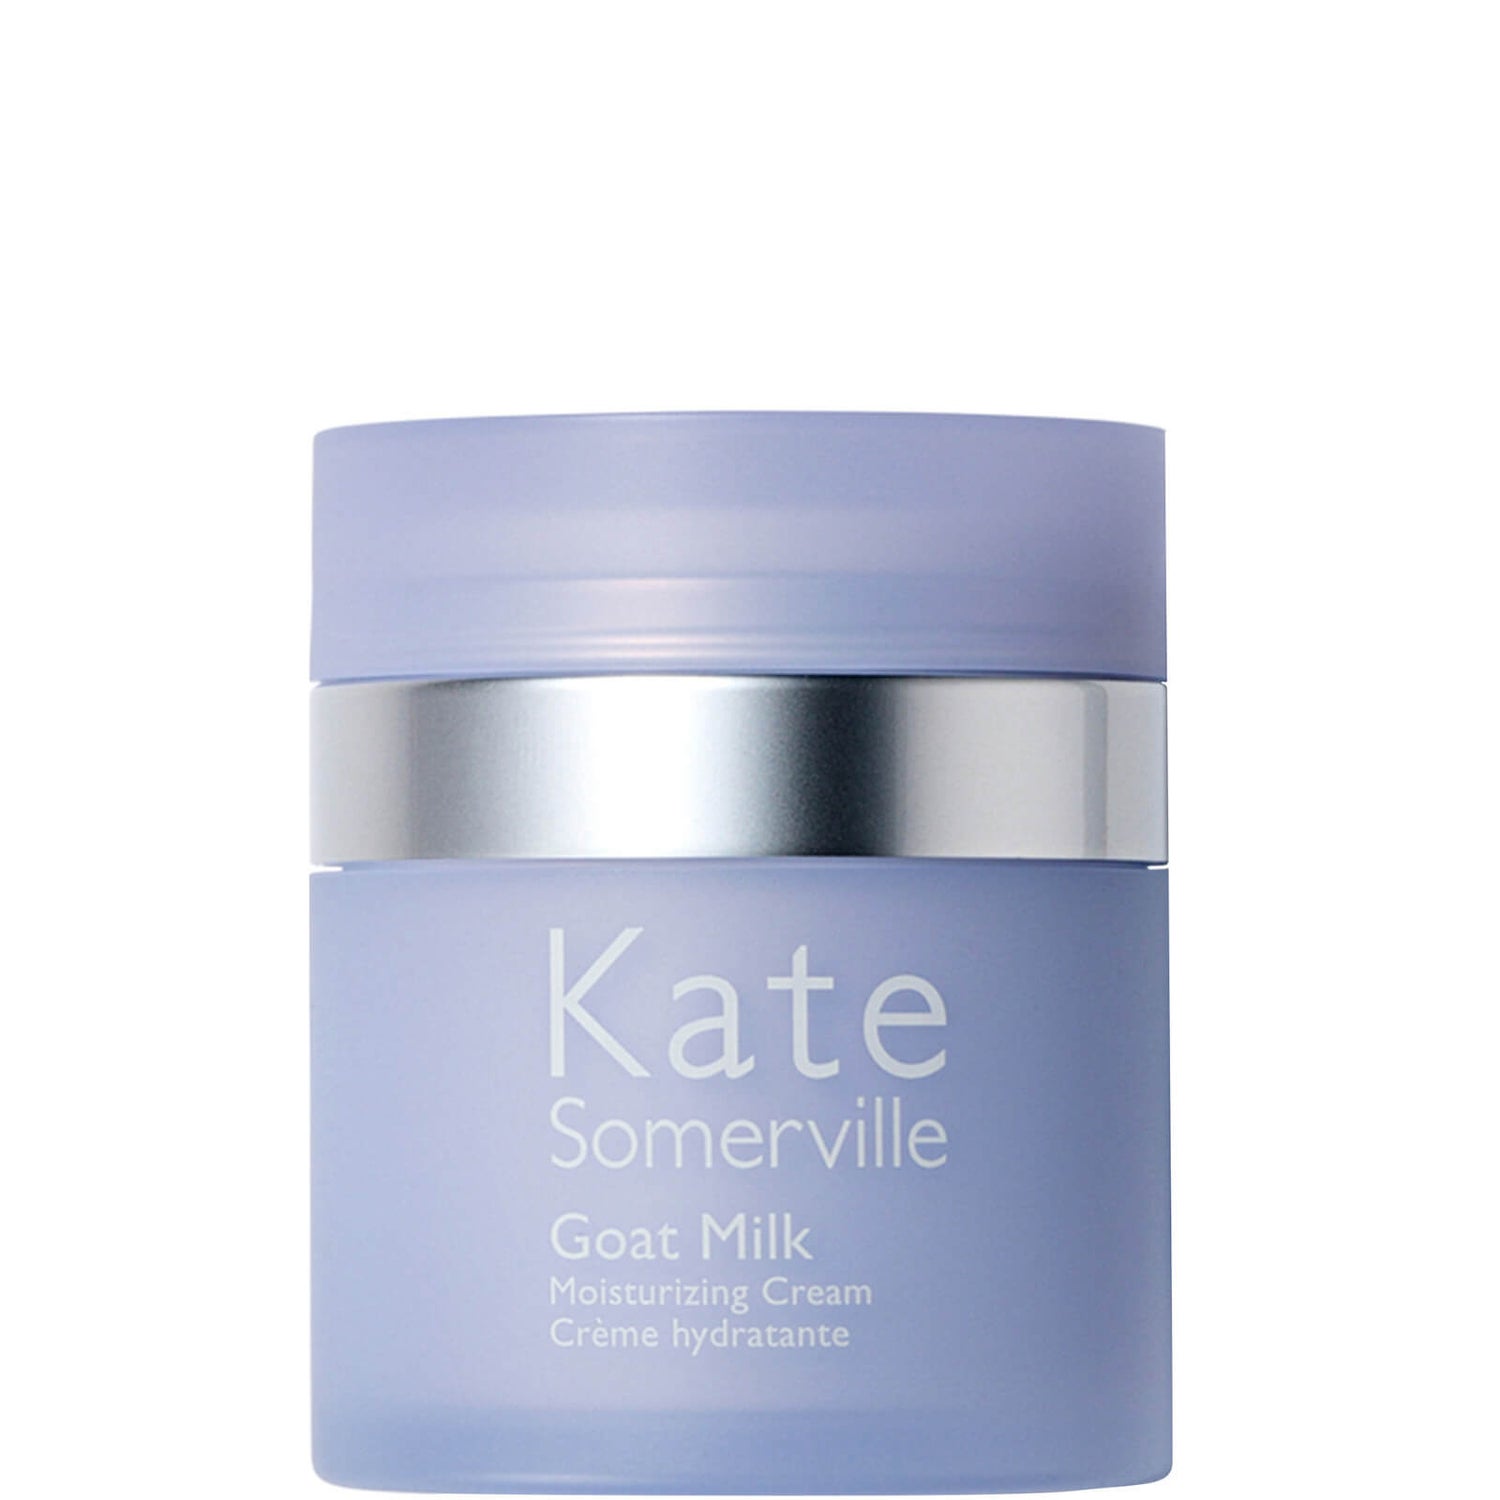 Kate Somerville Goat Milk Moisturizing Cream 50ml | Cult Beauty